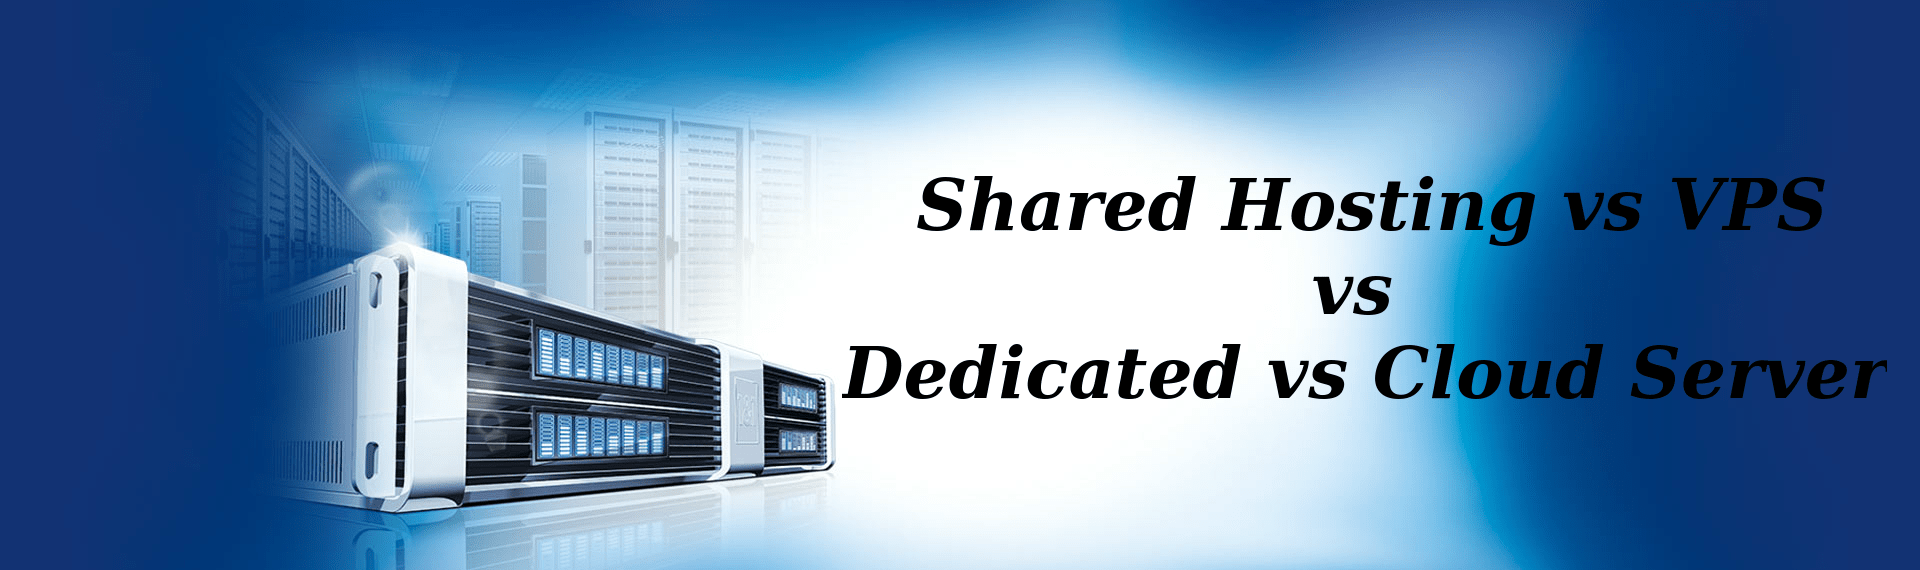 shared-hosting-vs-vps-vs-dedicated-vs-cl